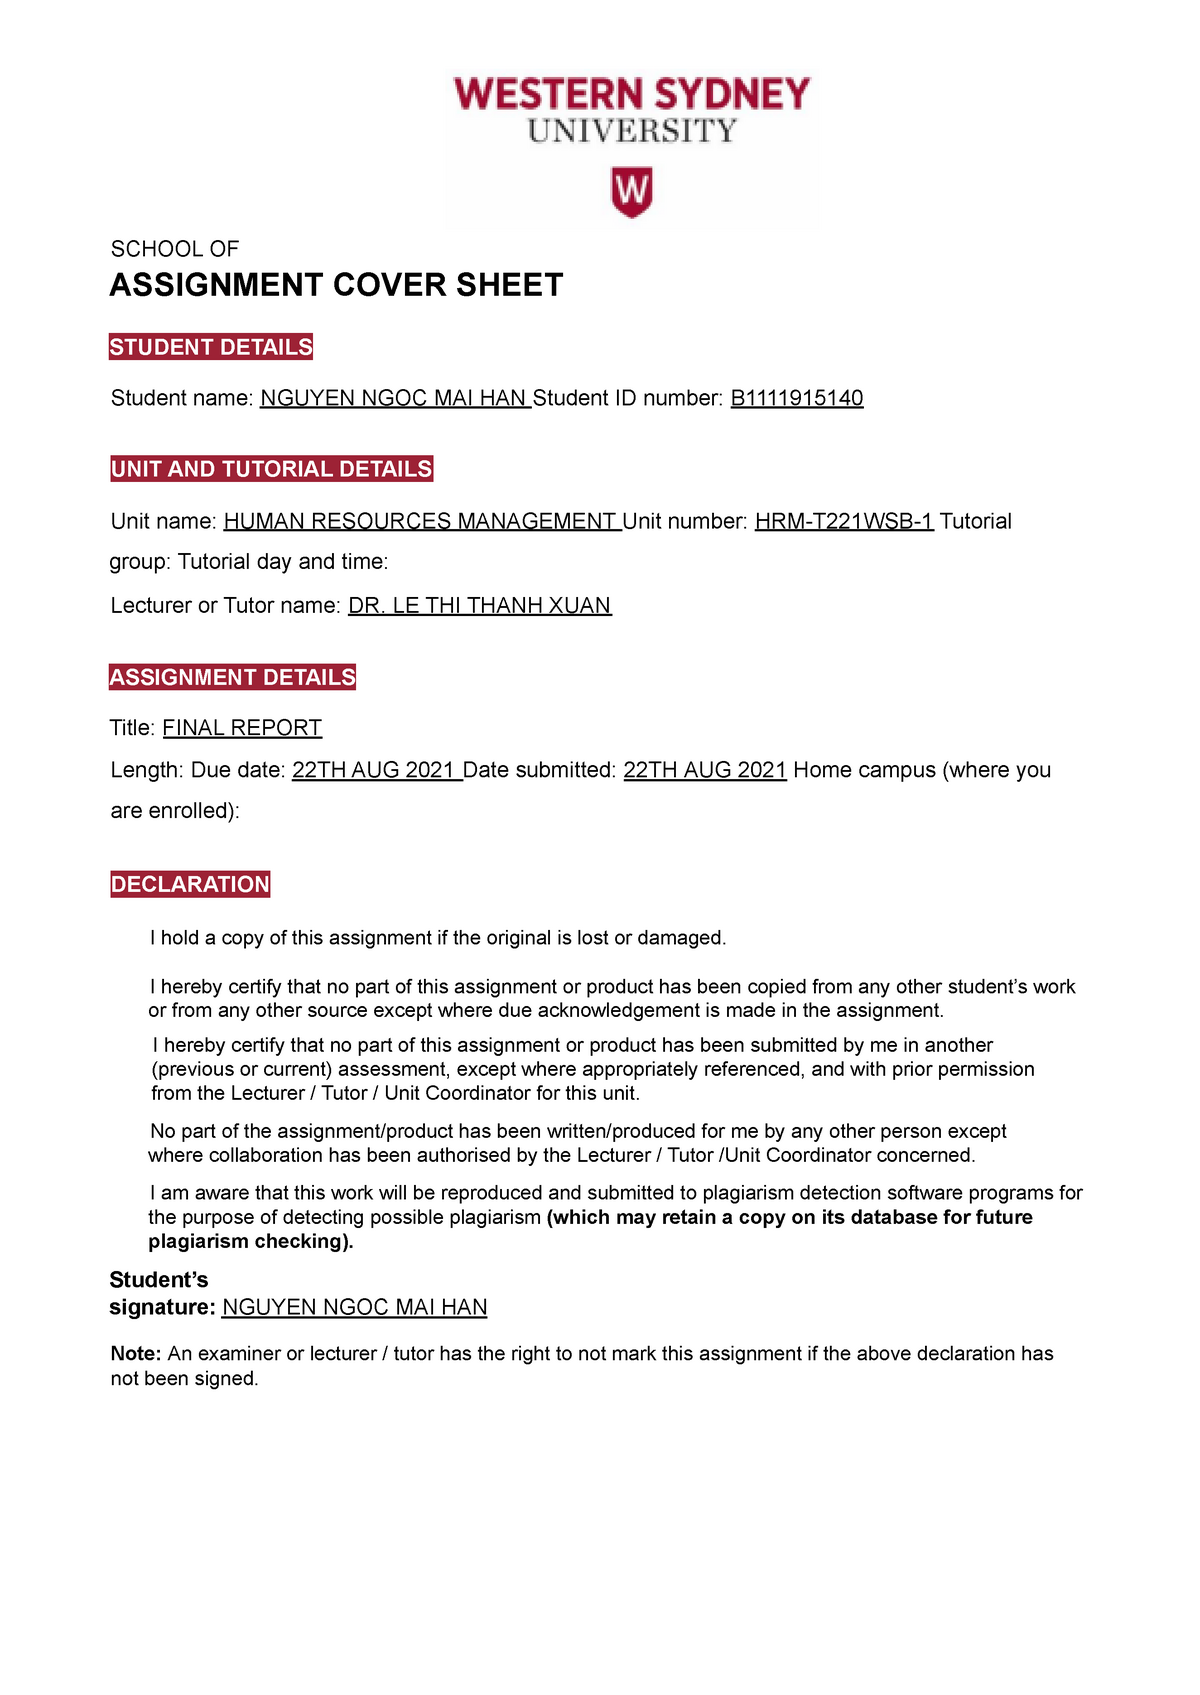 anu assignment cover sheet